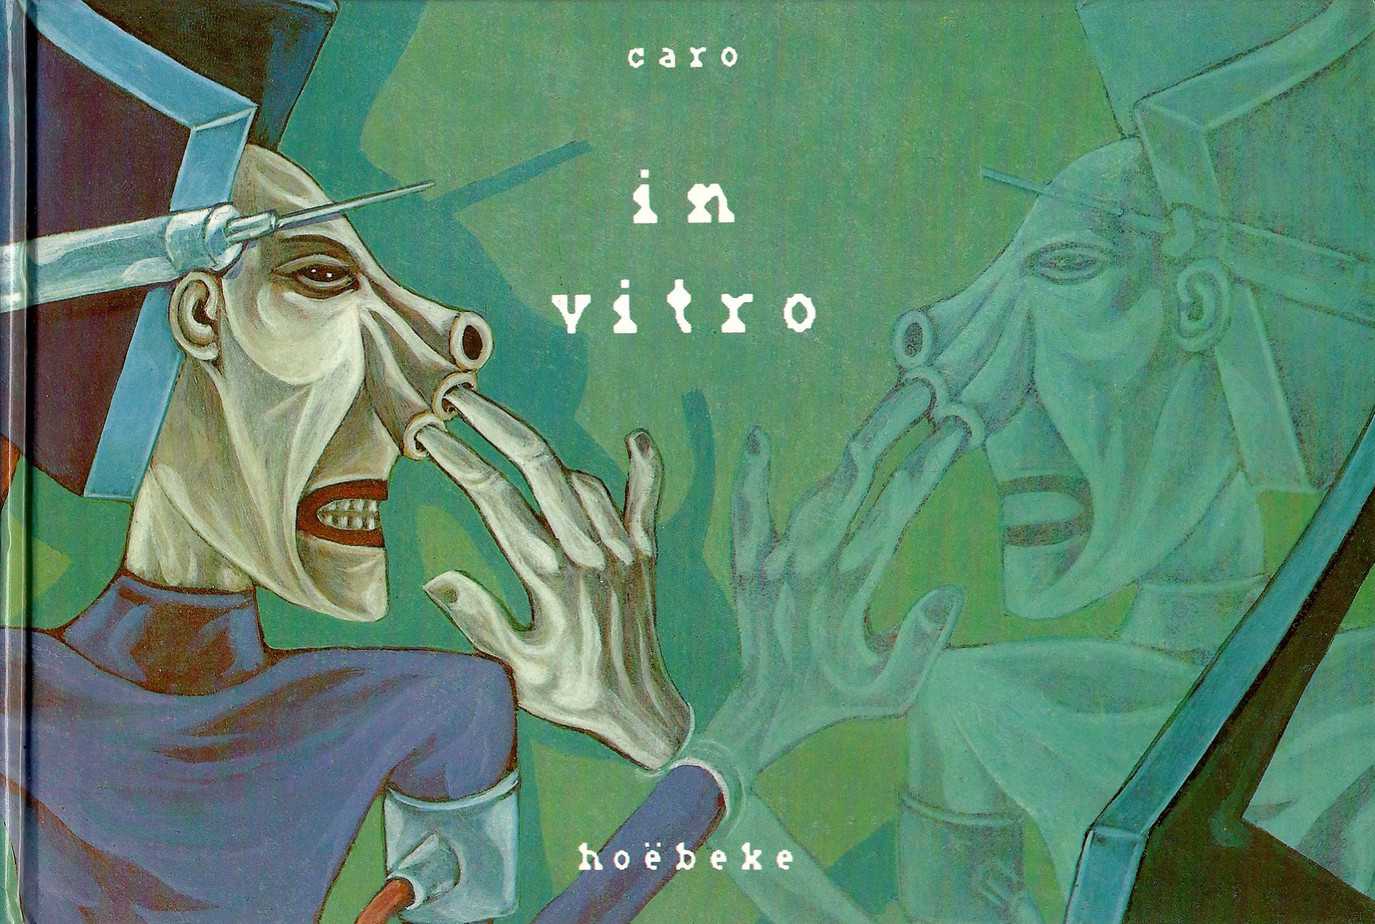 IN VITRO (1987) by Marc Caro